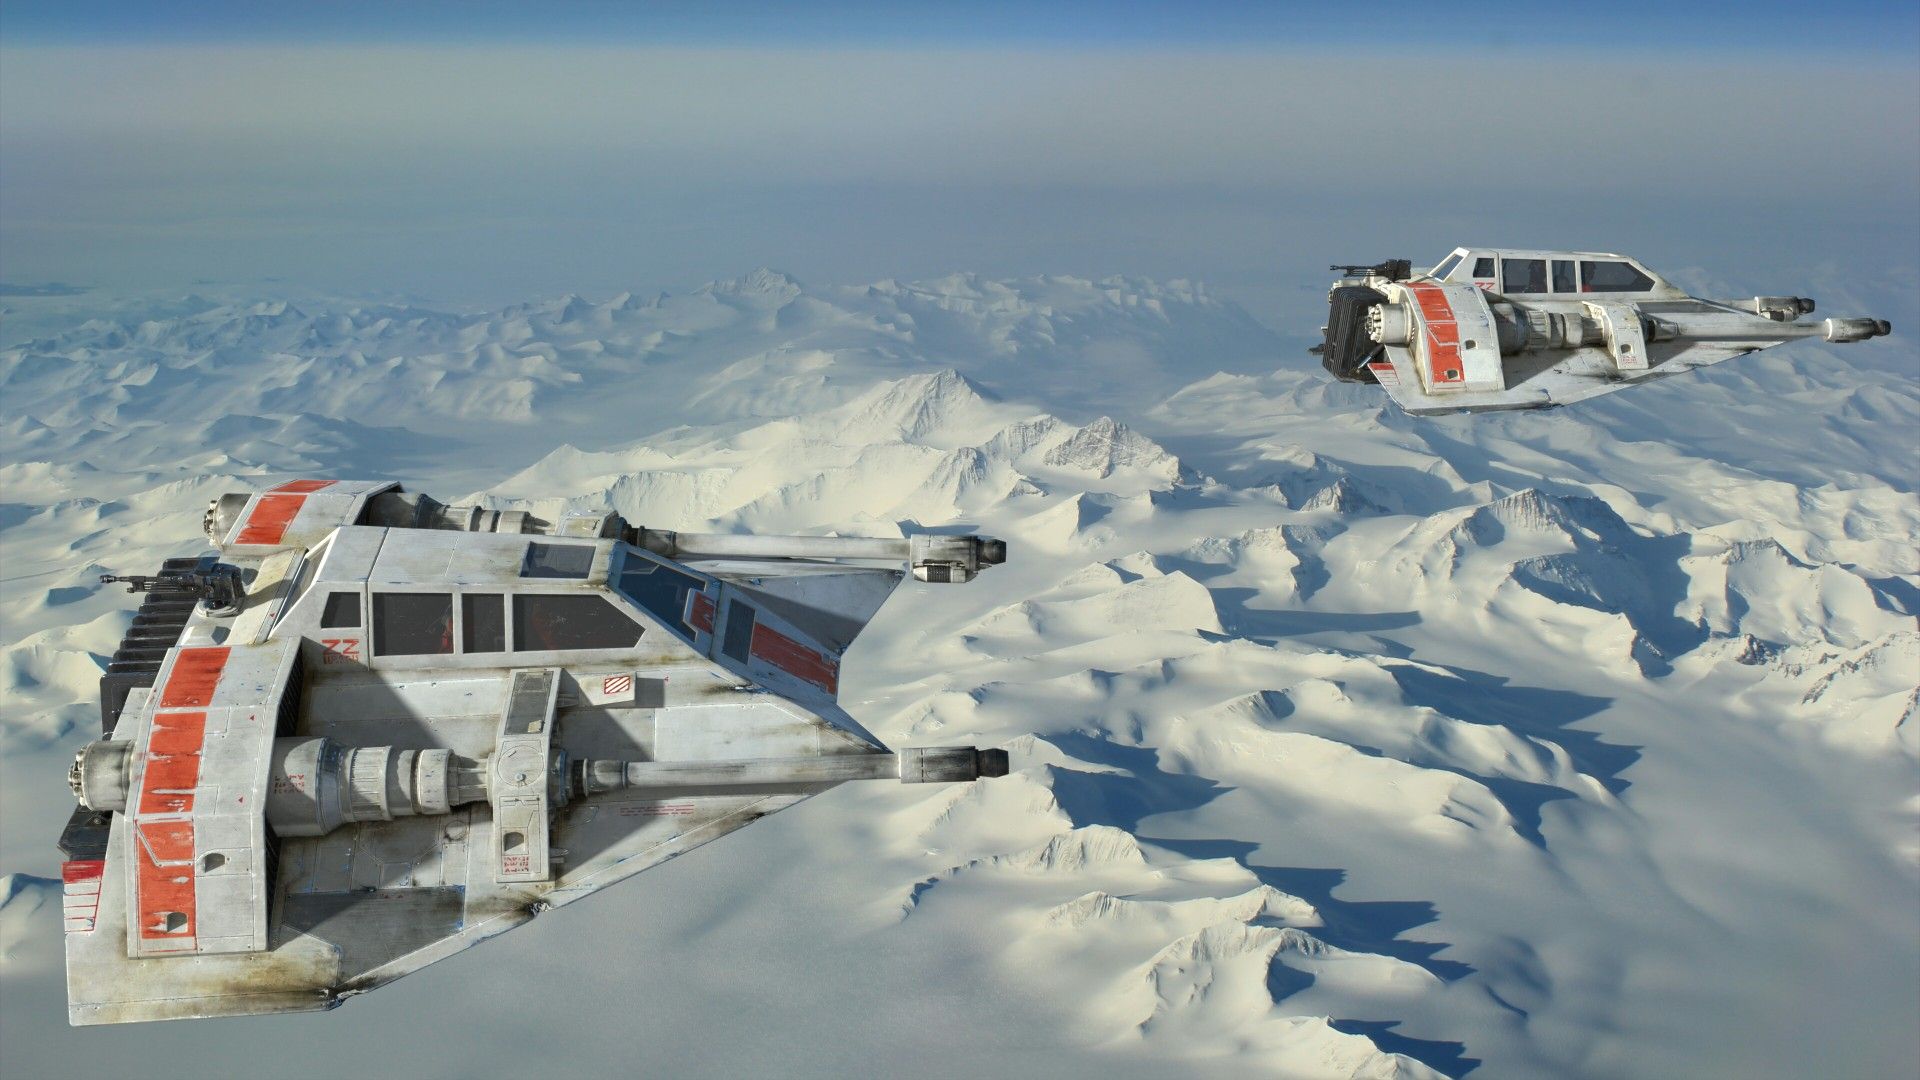 Star Wars #starwars snow speeder. Star wars wallpaper, Star wars ships, Star wars hoth